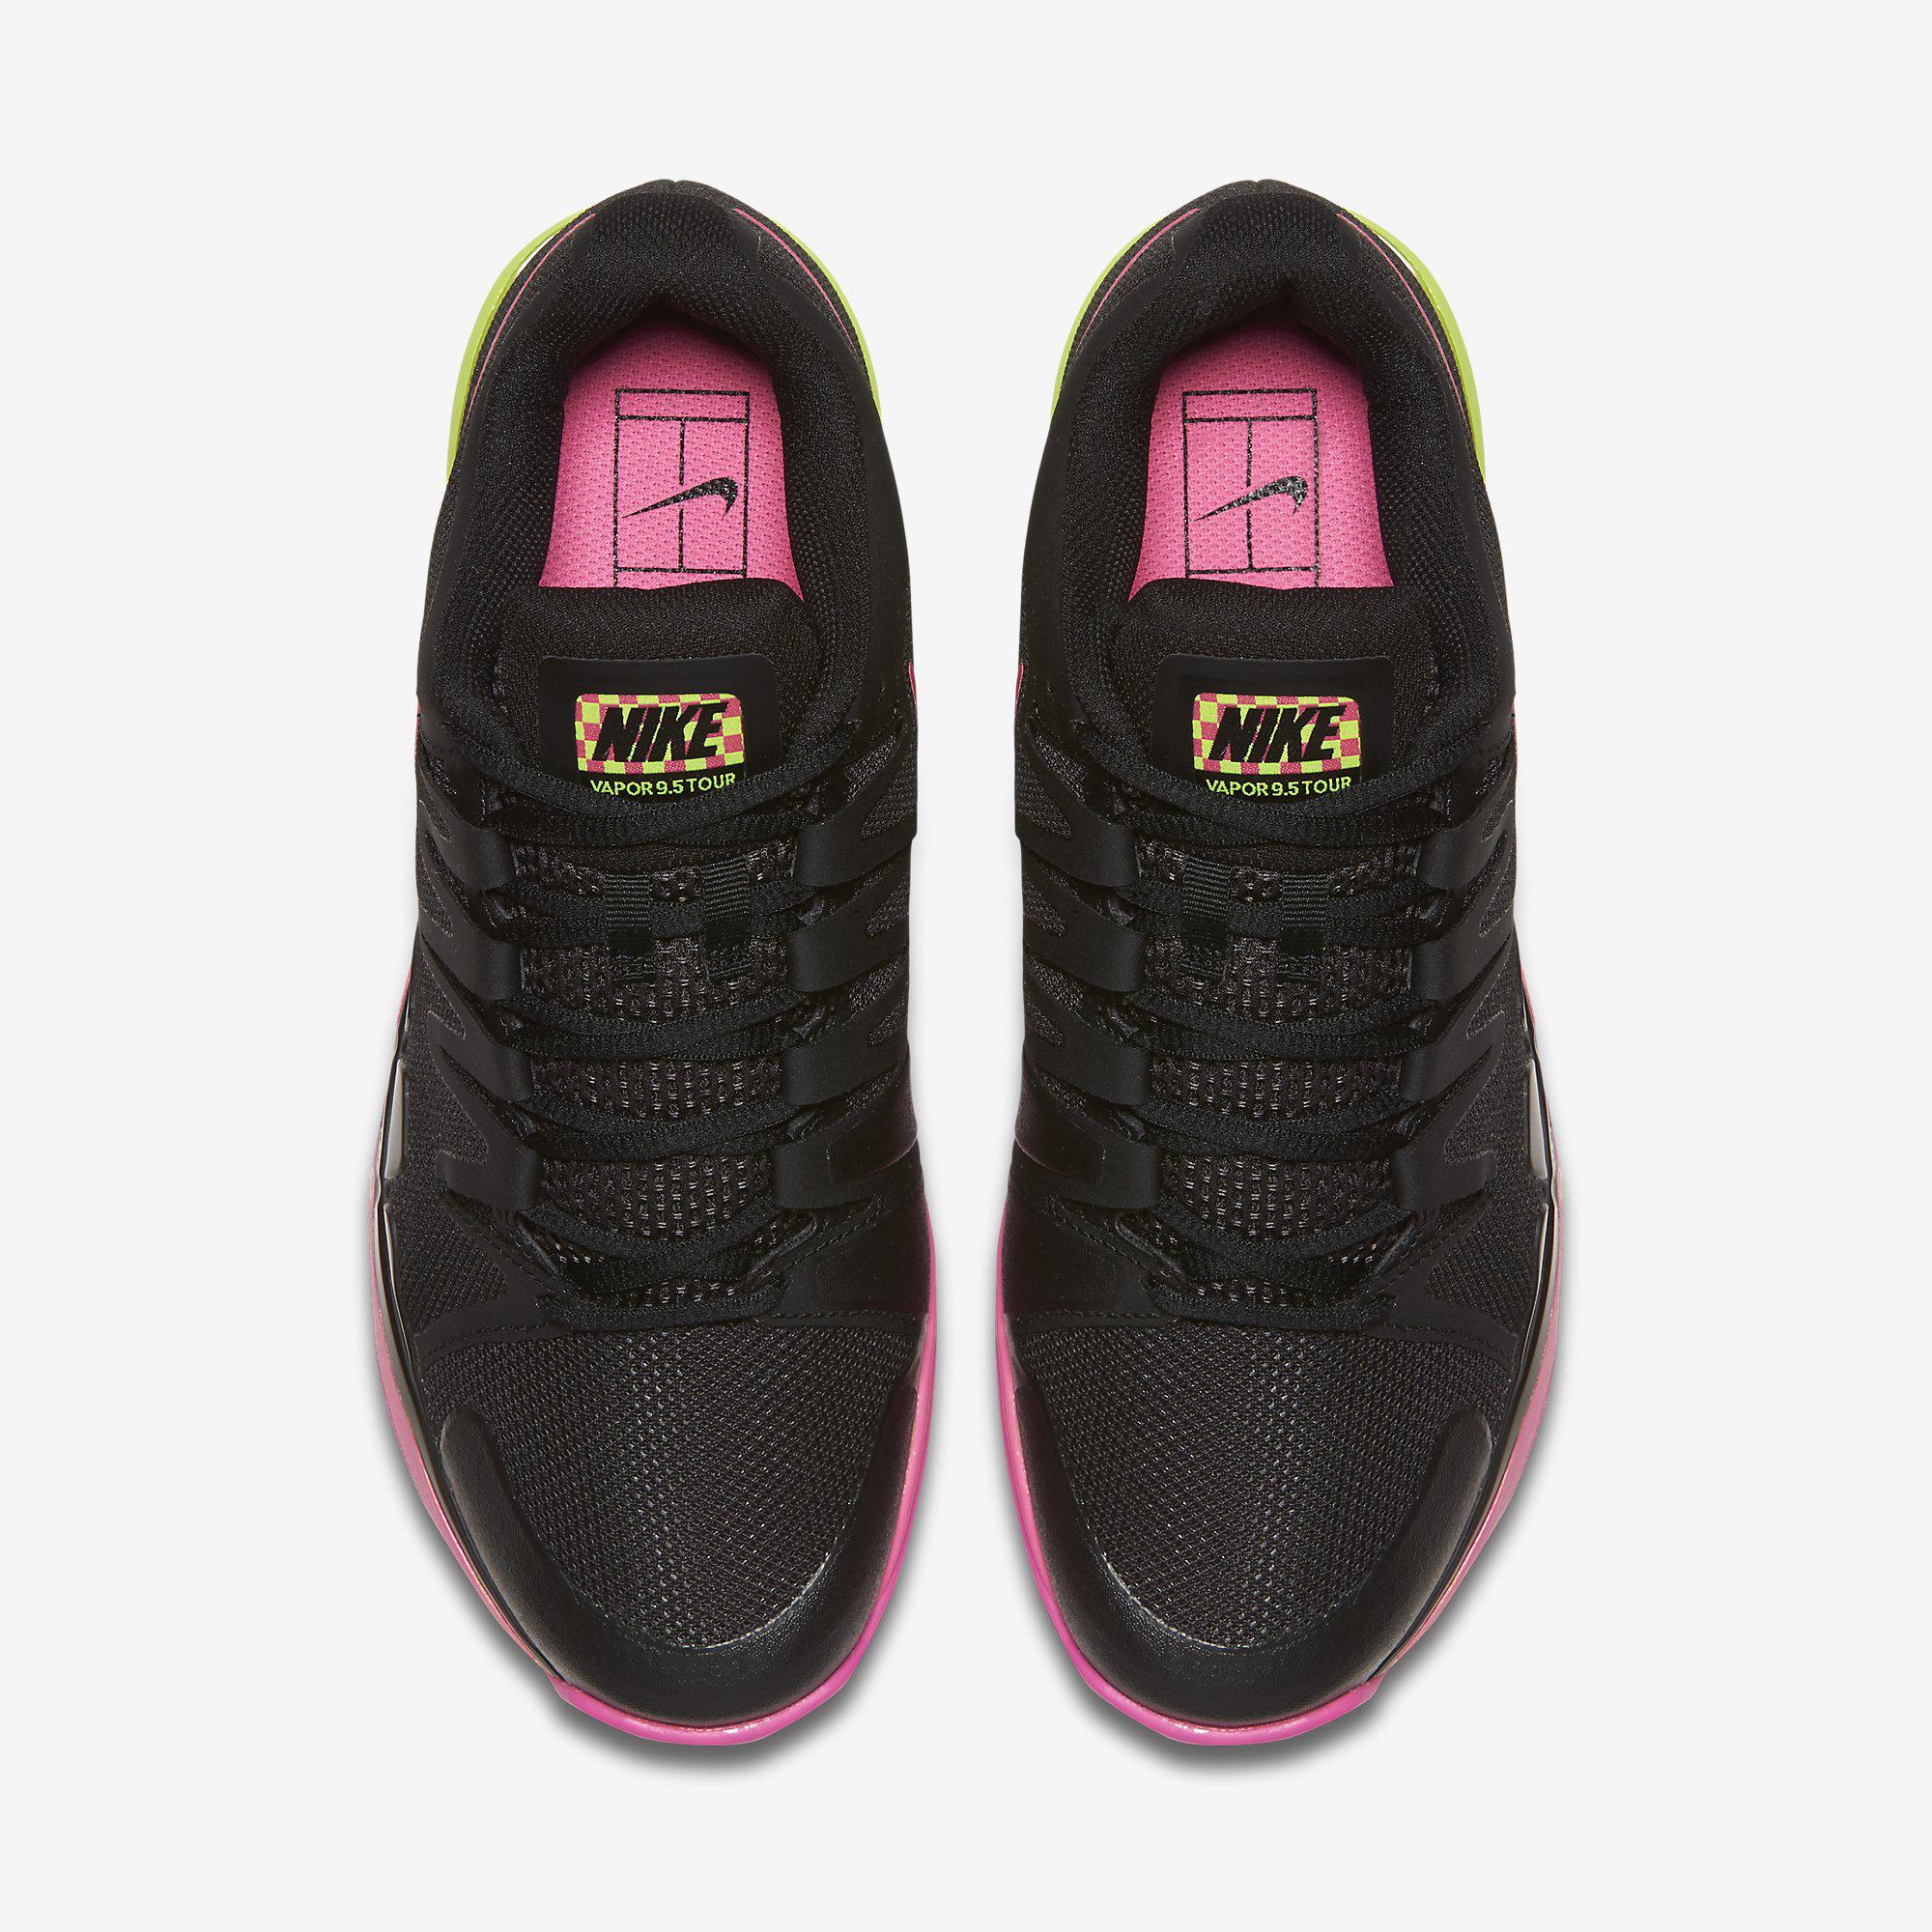 Nike Womens Zoom Vapor 9.5 Tennis Shoes - Black/Volt/Pink - wcy.wat.edu.pl